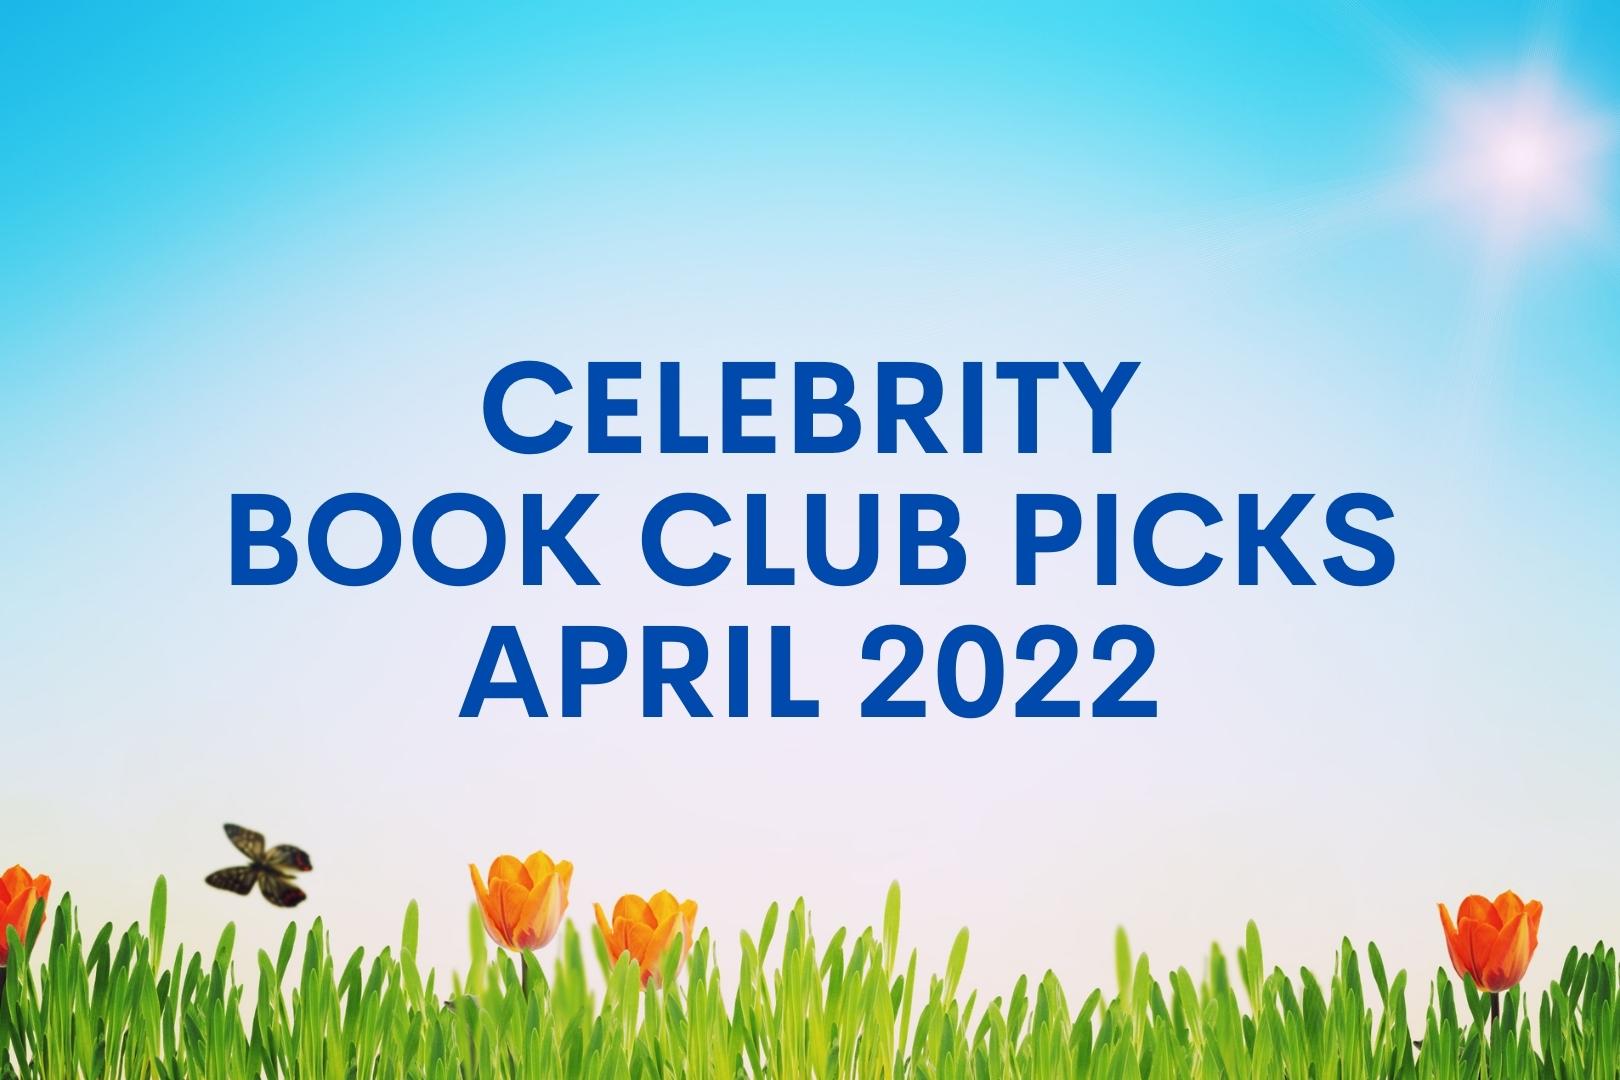 Celebrity Book Club Picks for April 2022